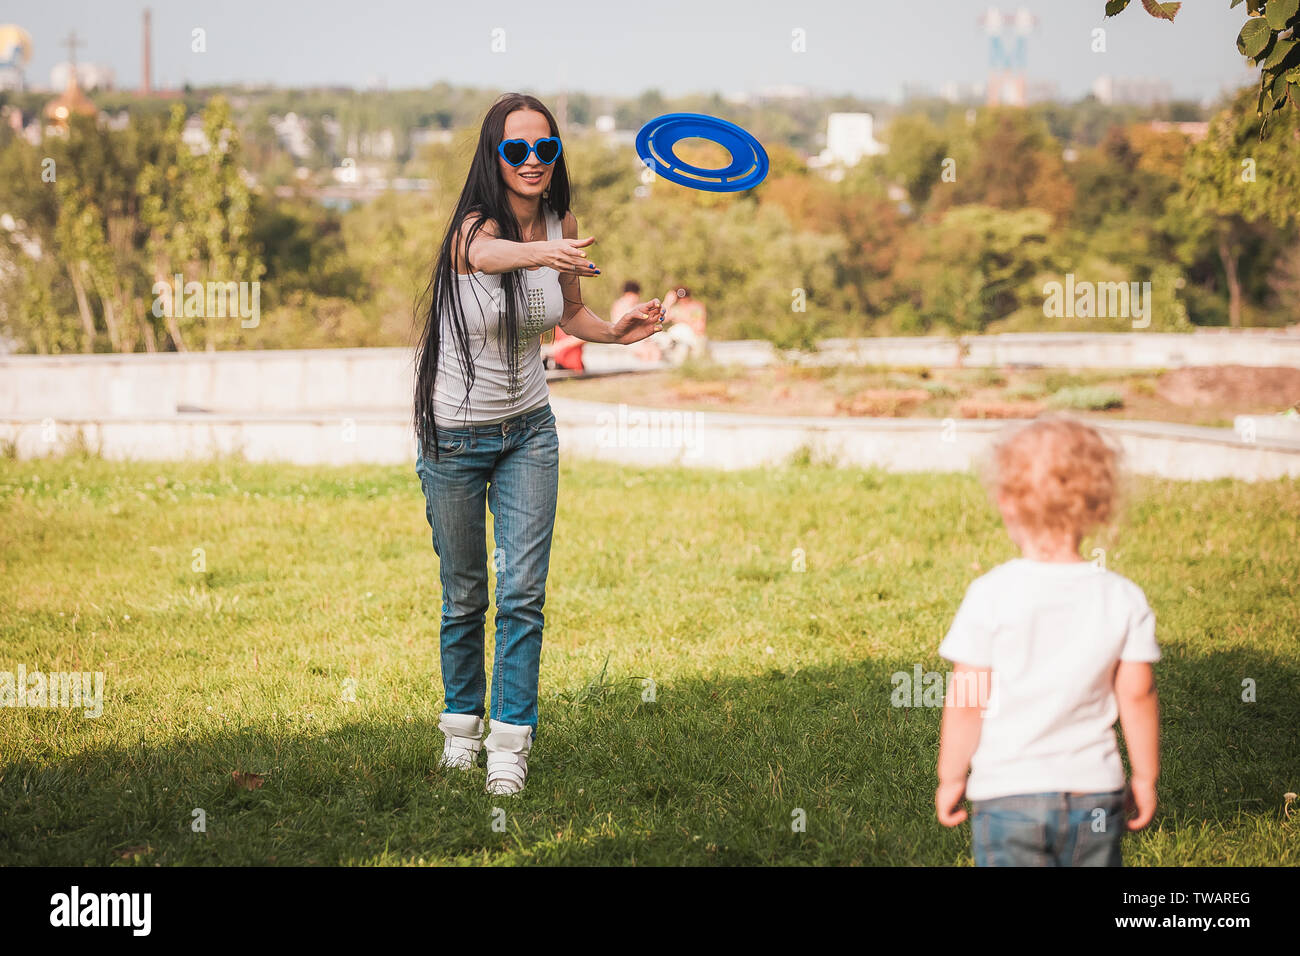 Familie Frisbee spielen auf der Wiese im Park Stockfotografie - Alamy